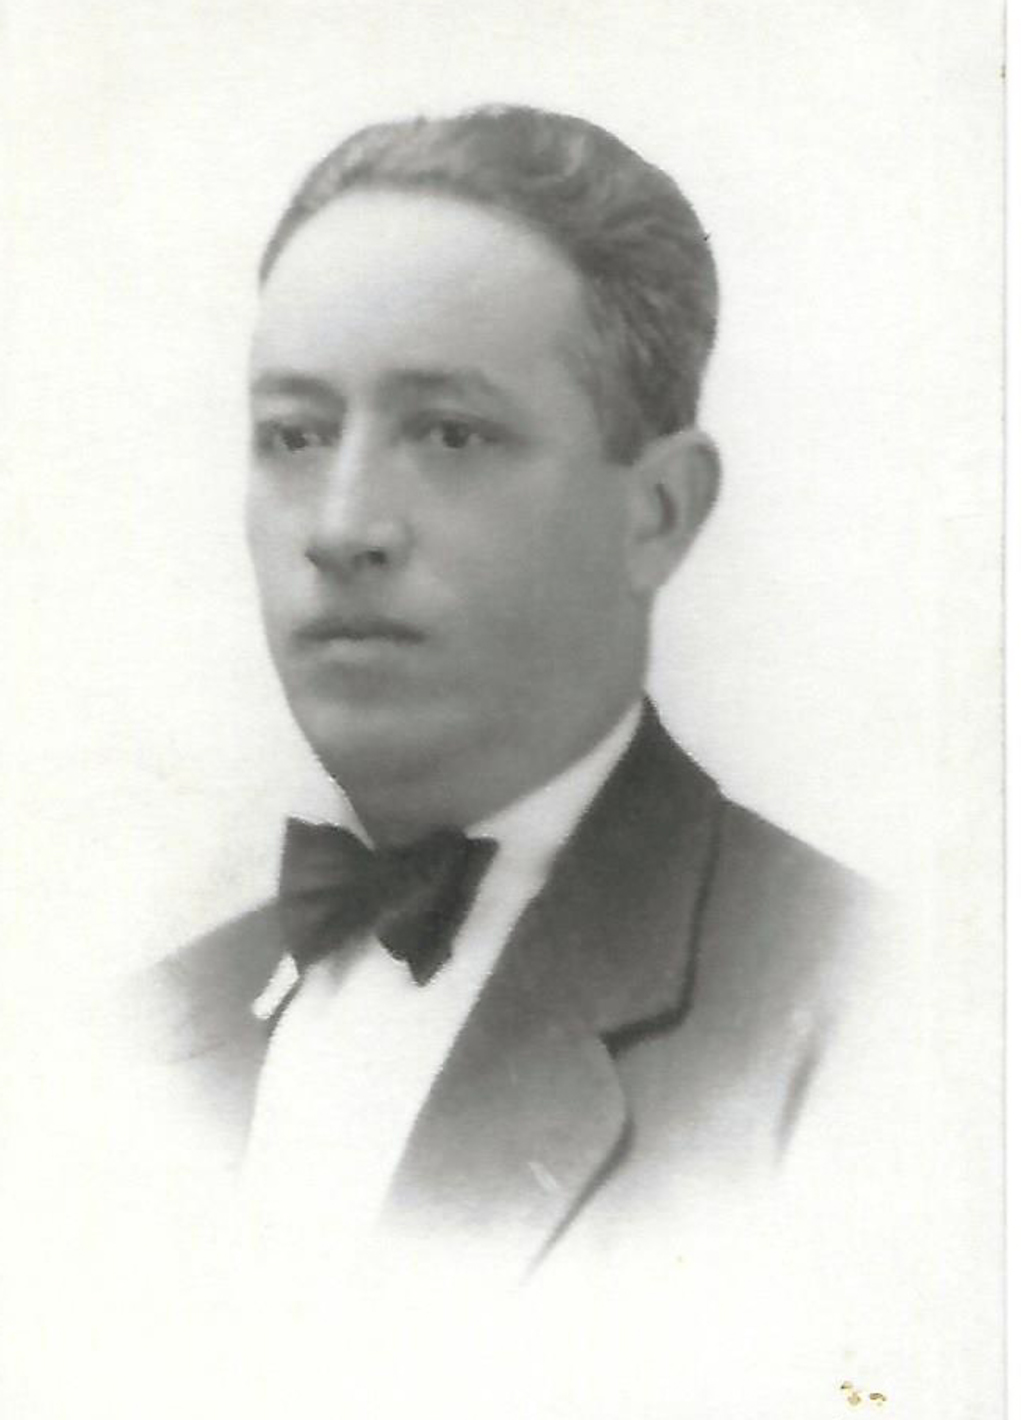 Profesor Salvador Córdoba Castro.

